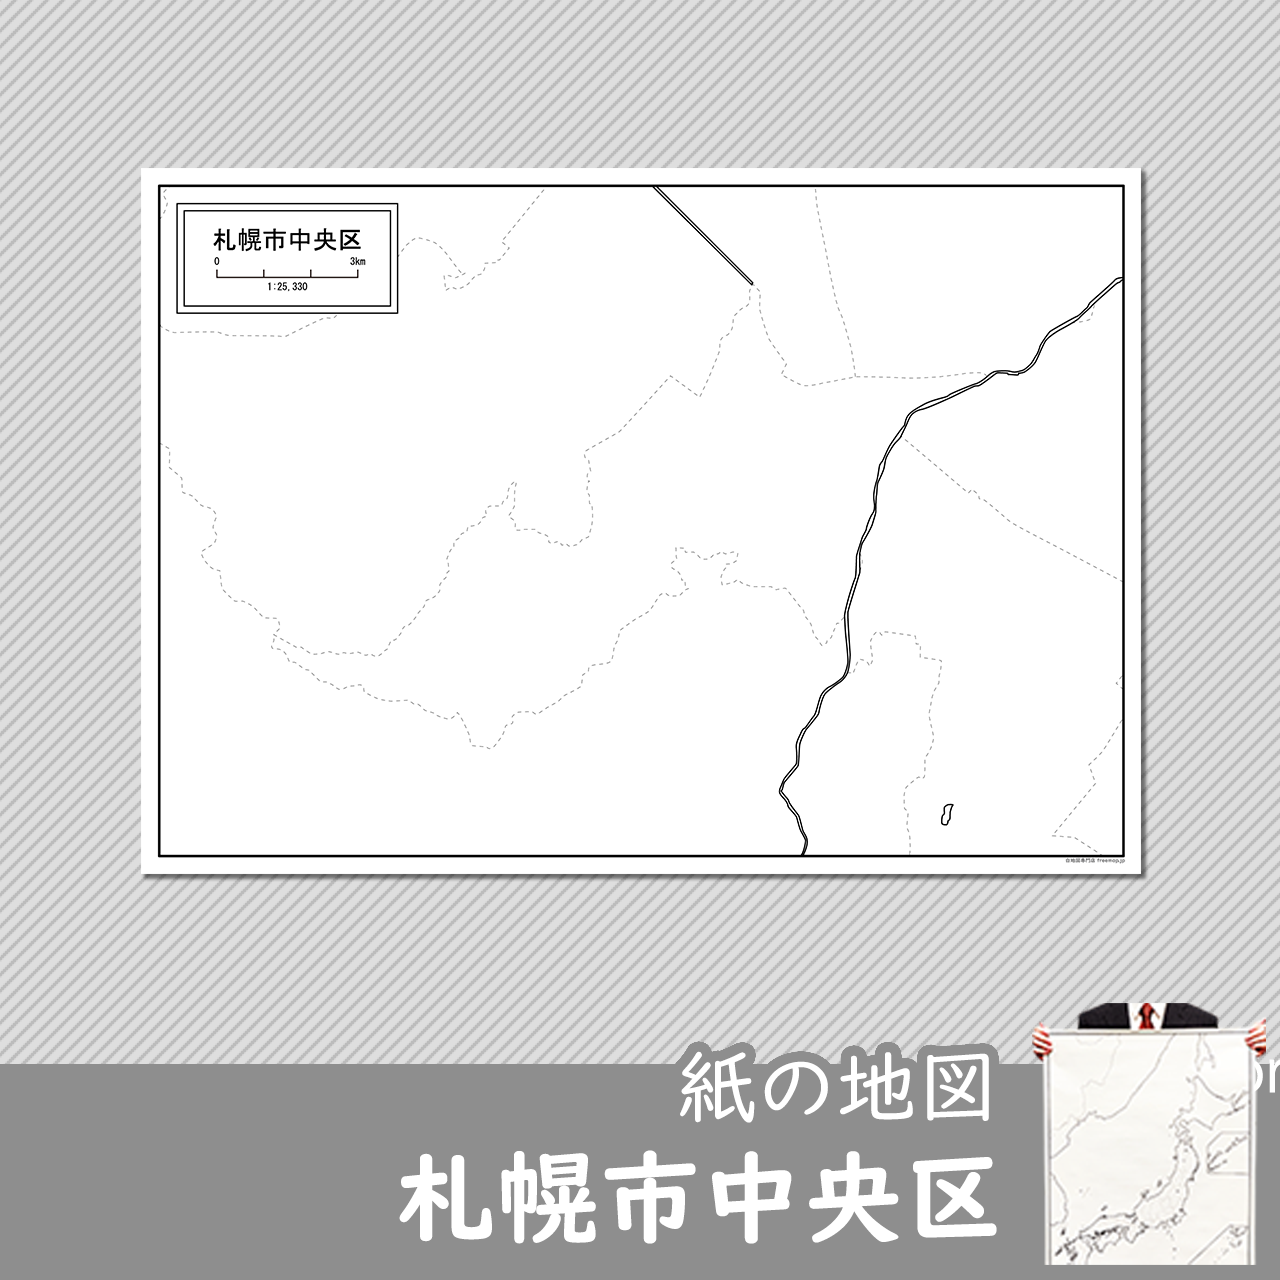 札幌市中央区の紙の白地図のサムネイル